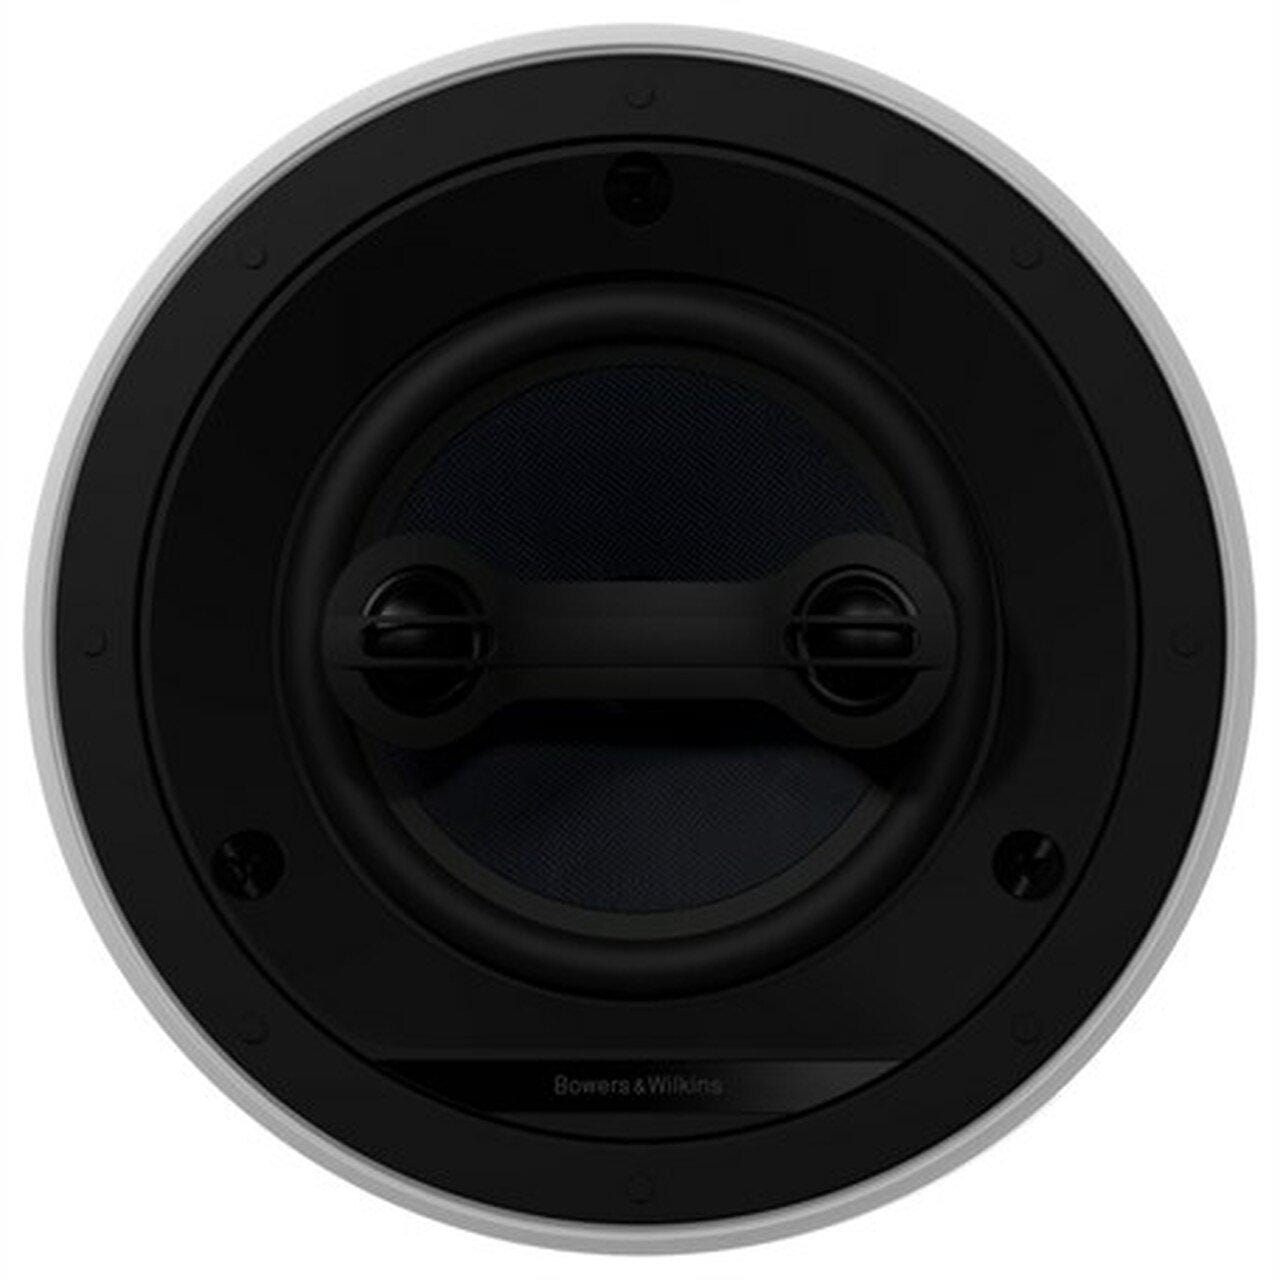 Bowers & Wilkins Custom Speakers B&W CCM663SR Stereo In-Ceiling Speakers (Each)